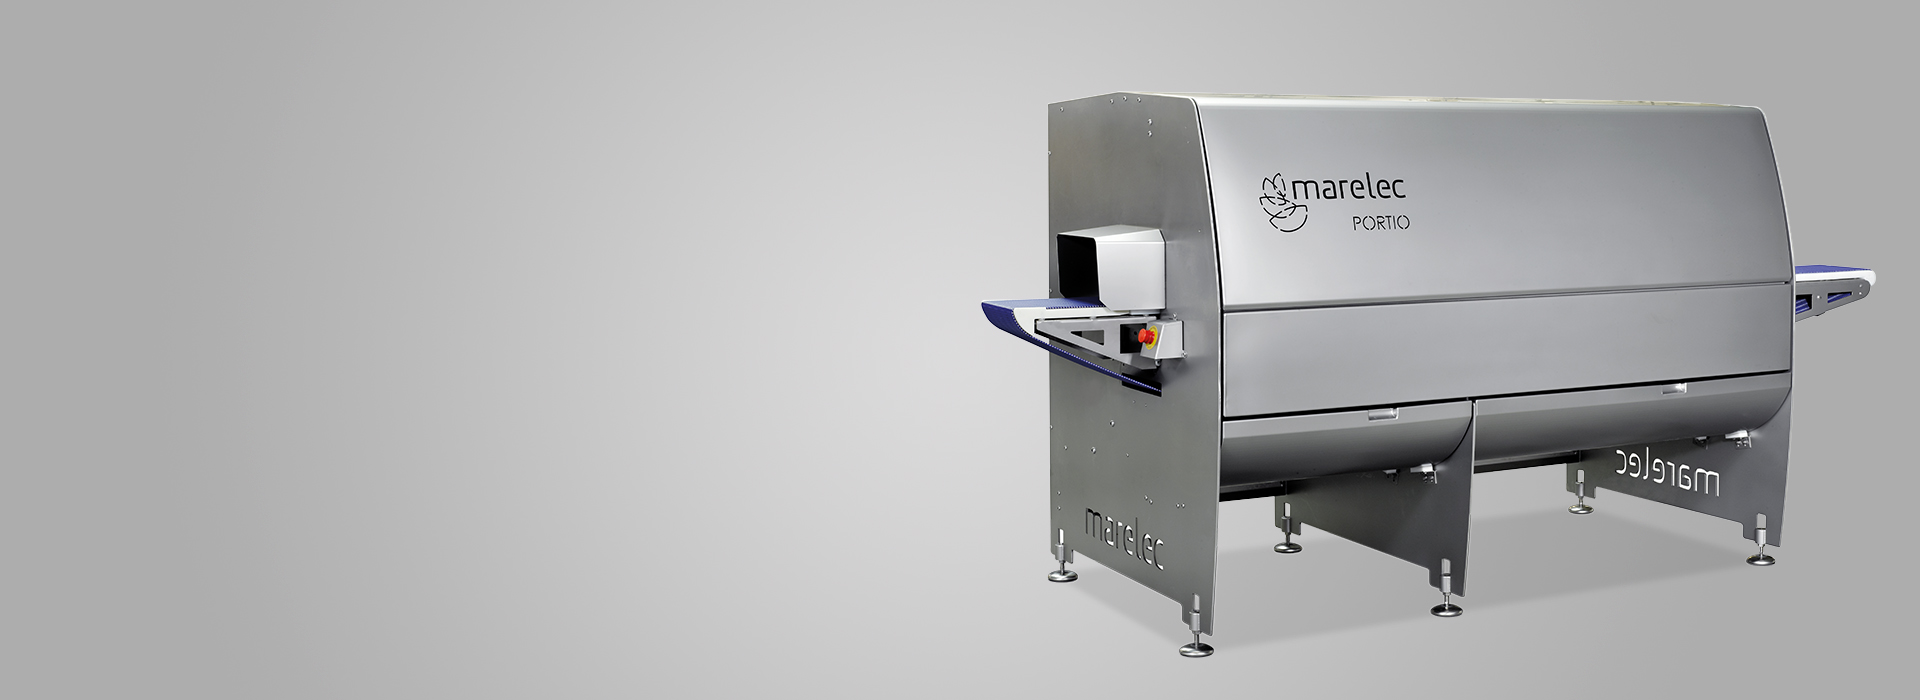 Máquina de corte inteligente para porciones de peso fijo de productos avícolas, como grandes filetes de ave para filetes de pavo.